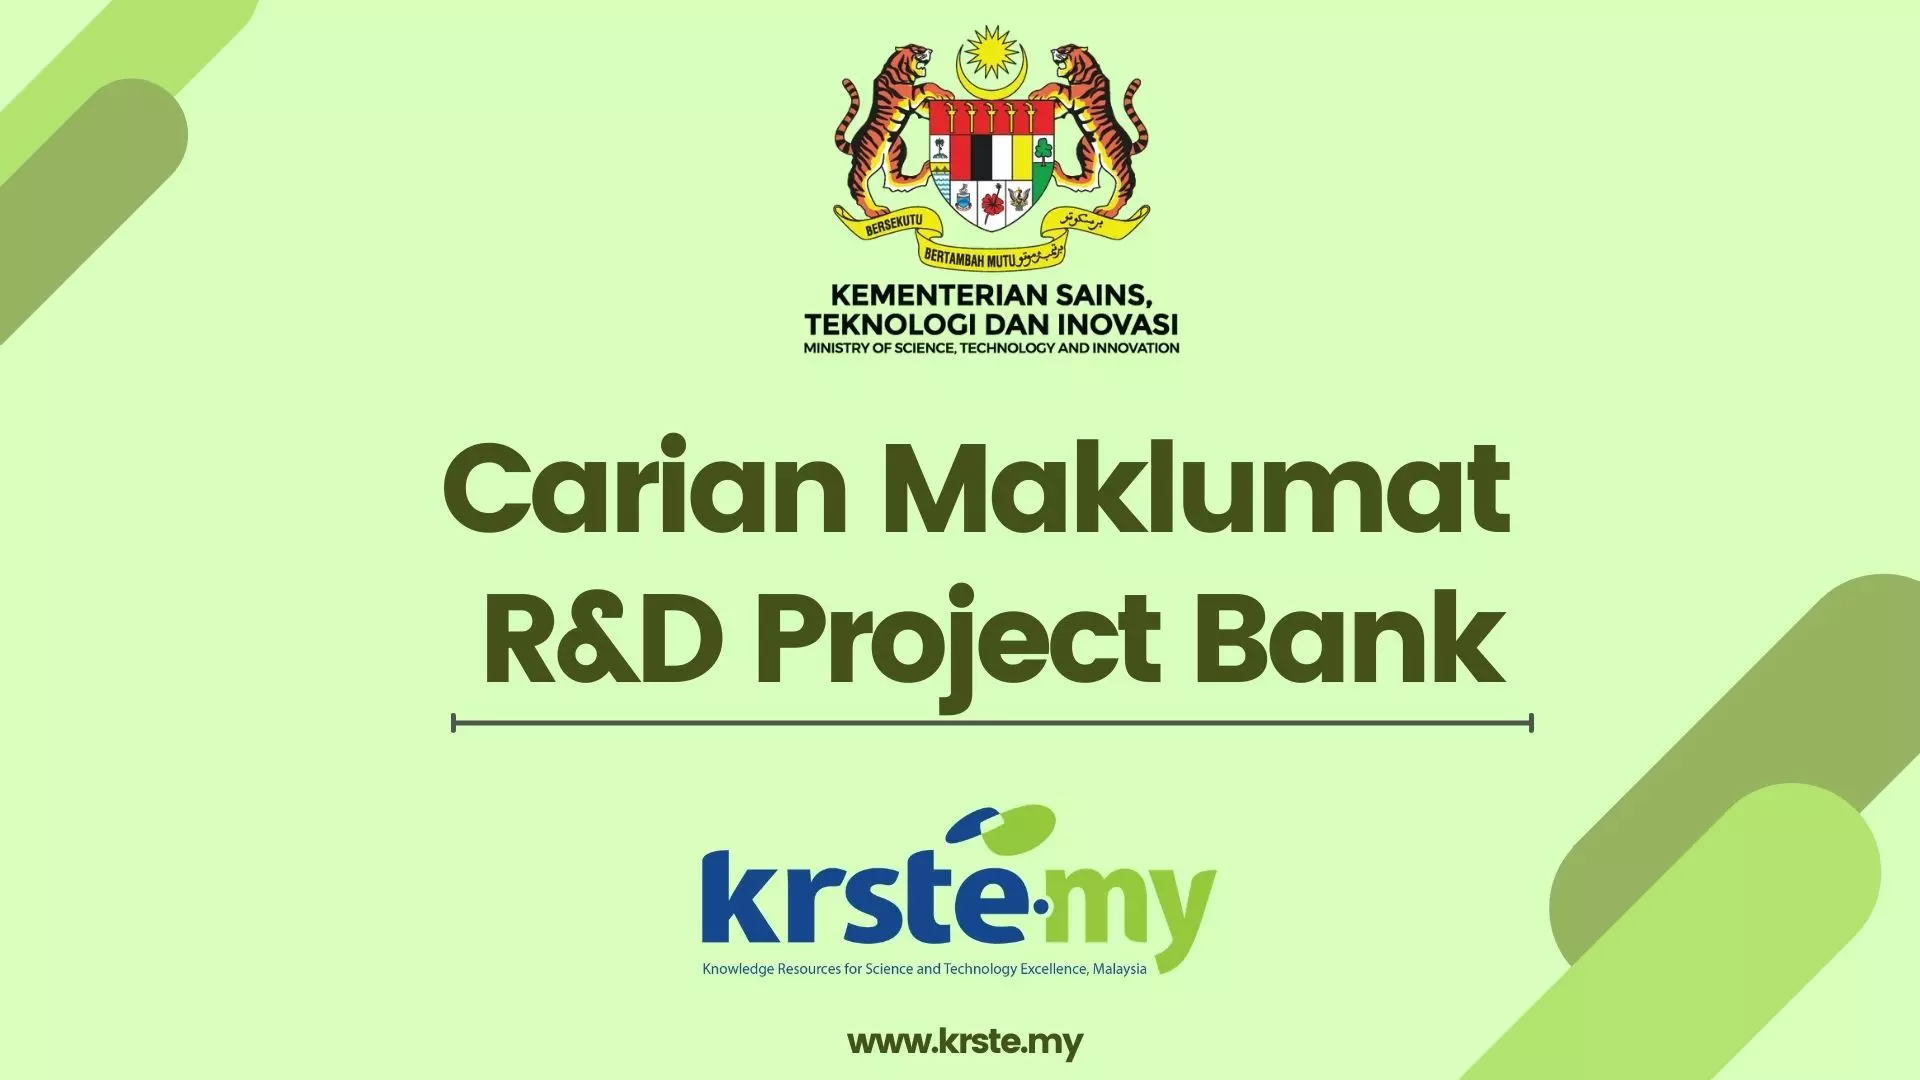 Carian Maklumat R&D Project Bank